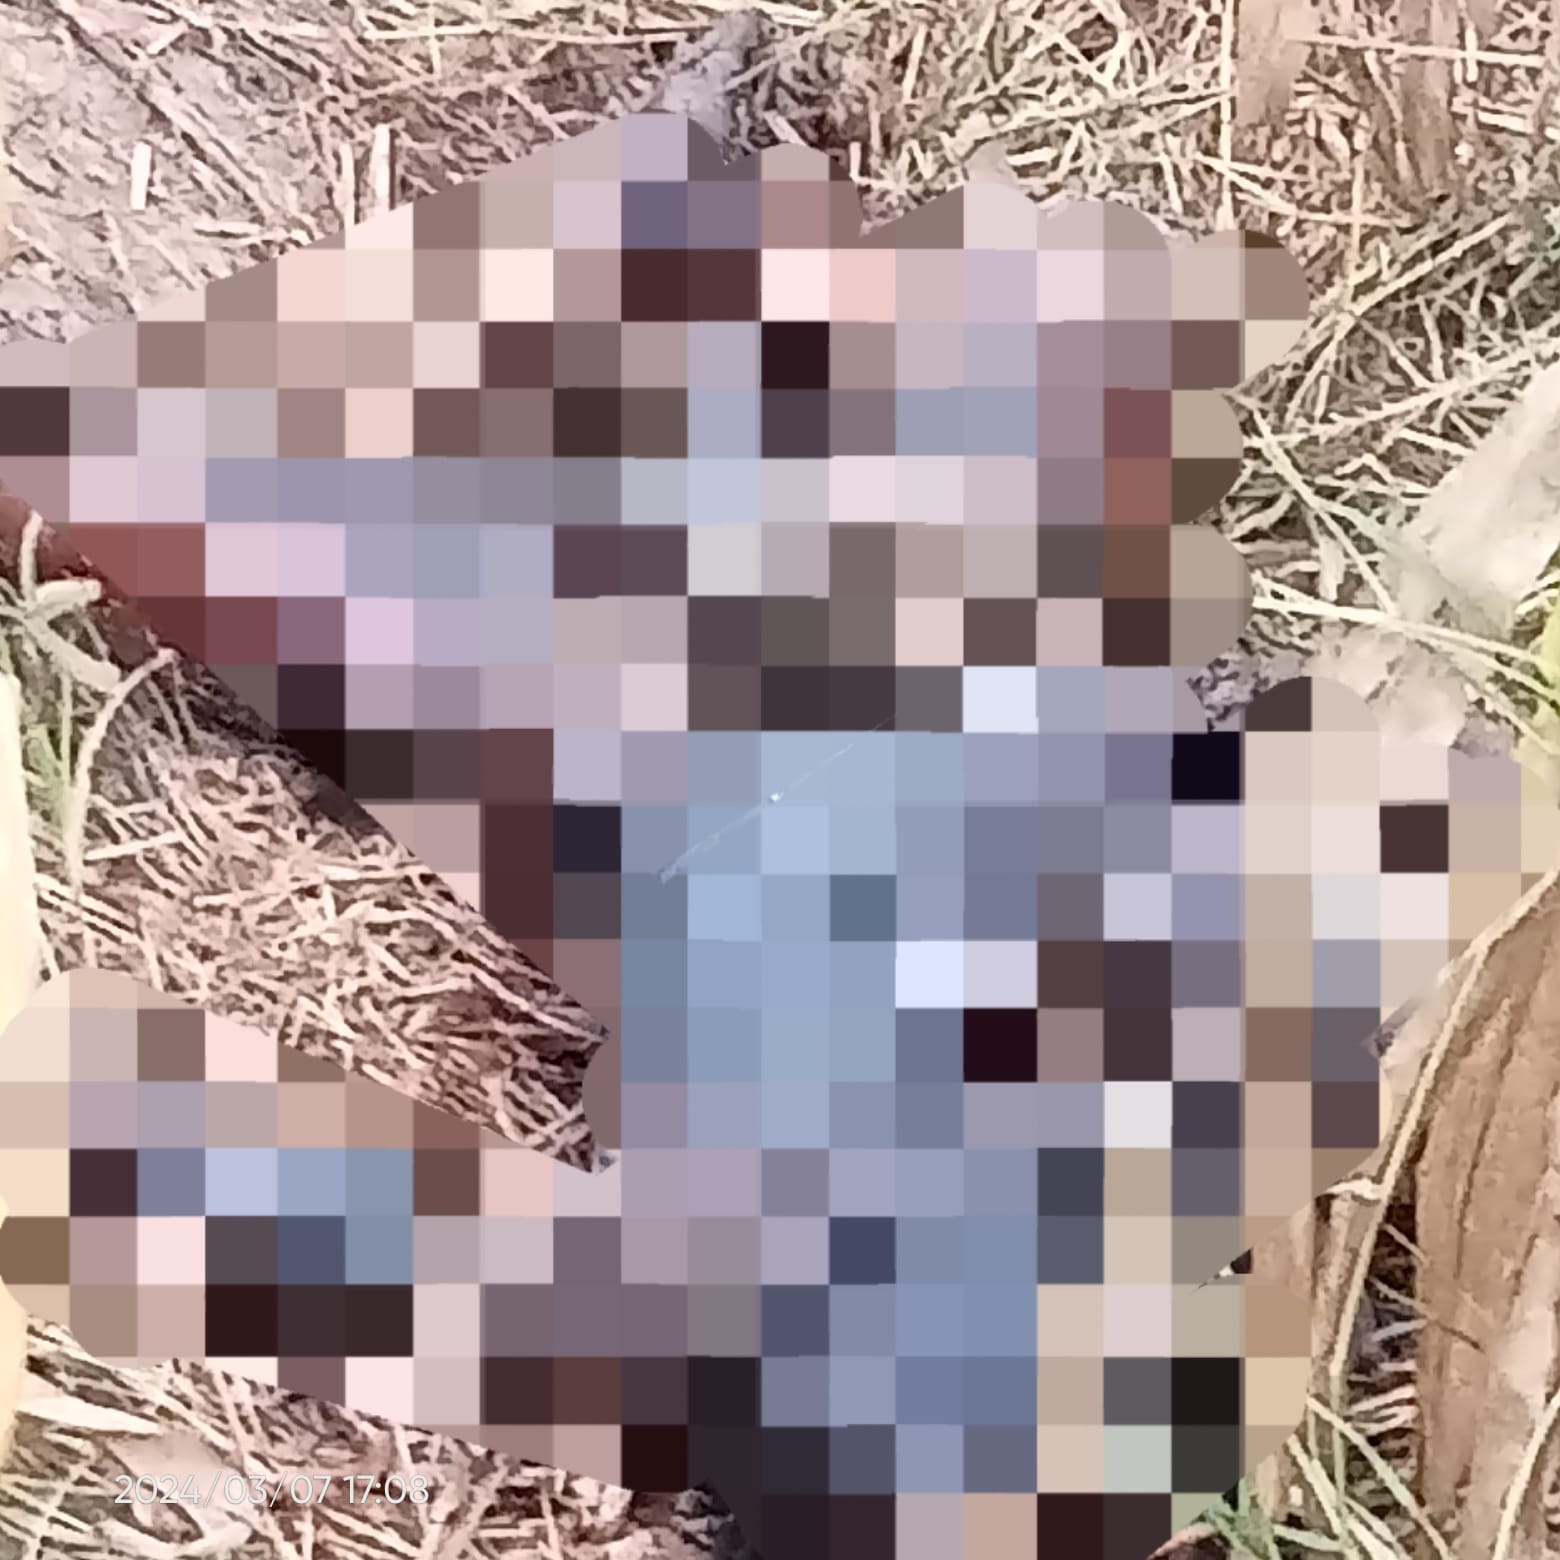 Warga Driyorejo Gresik Gempar,  Ditemukan Jasad Wanita dengan Kondisi Kancing Baju Terbuka Tanpa Celana